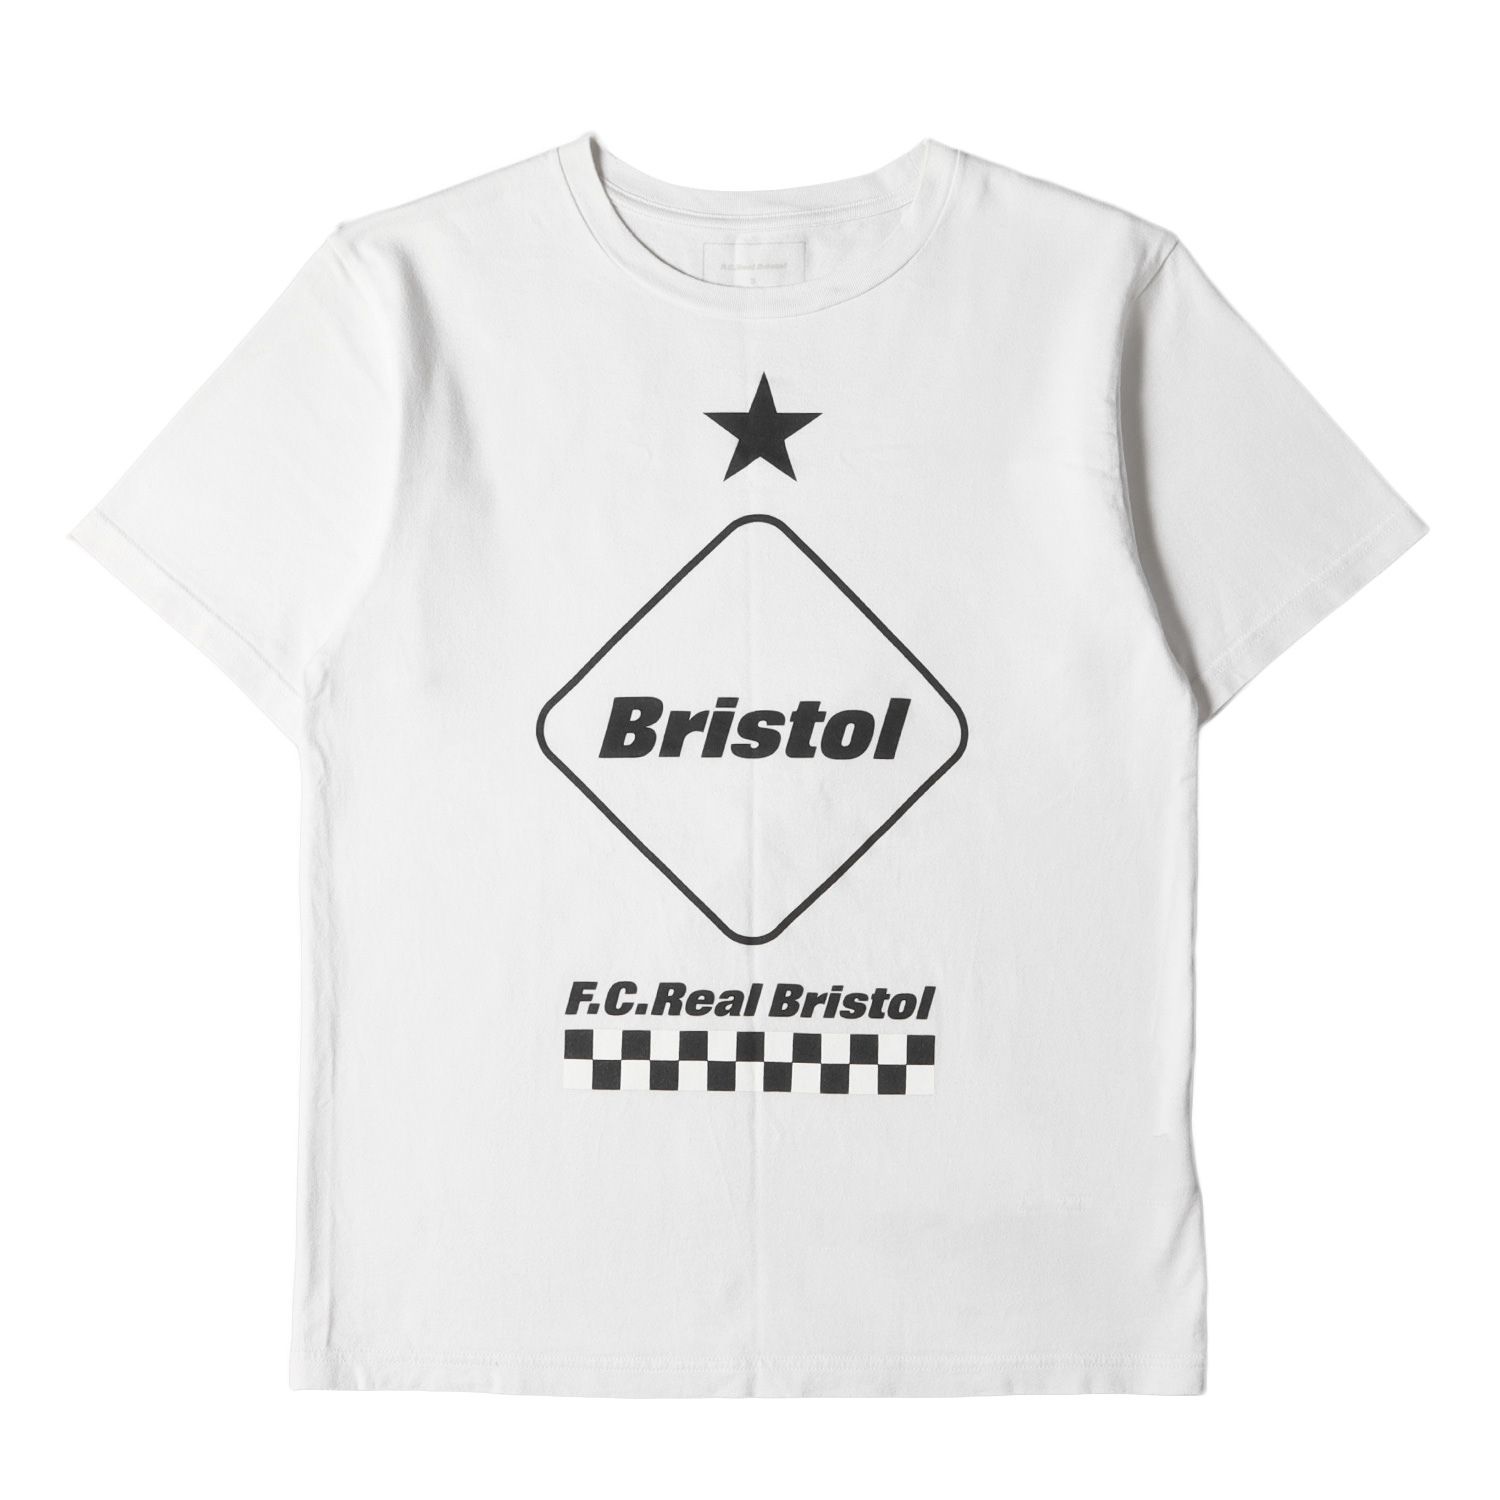 F.C.Real Bristol エフシーレアルブリストル Tシャツ サイズ:S ...